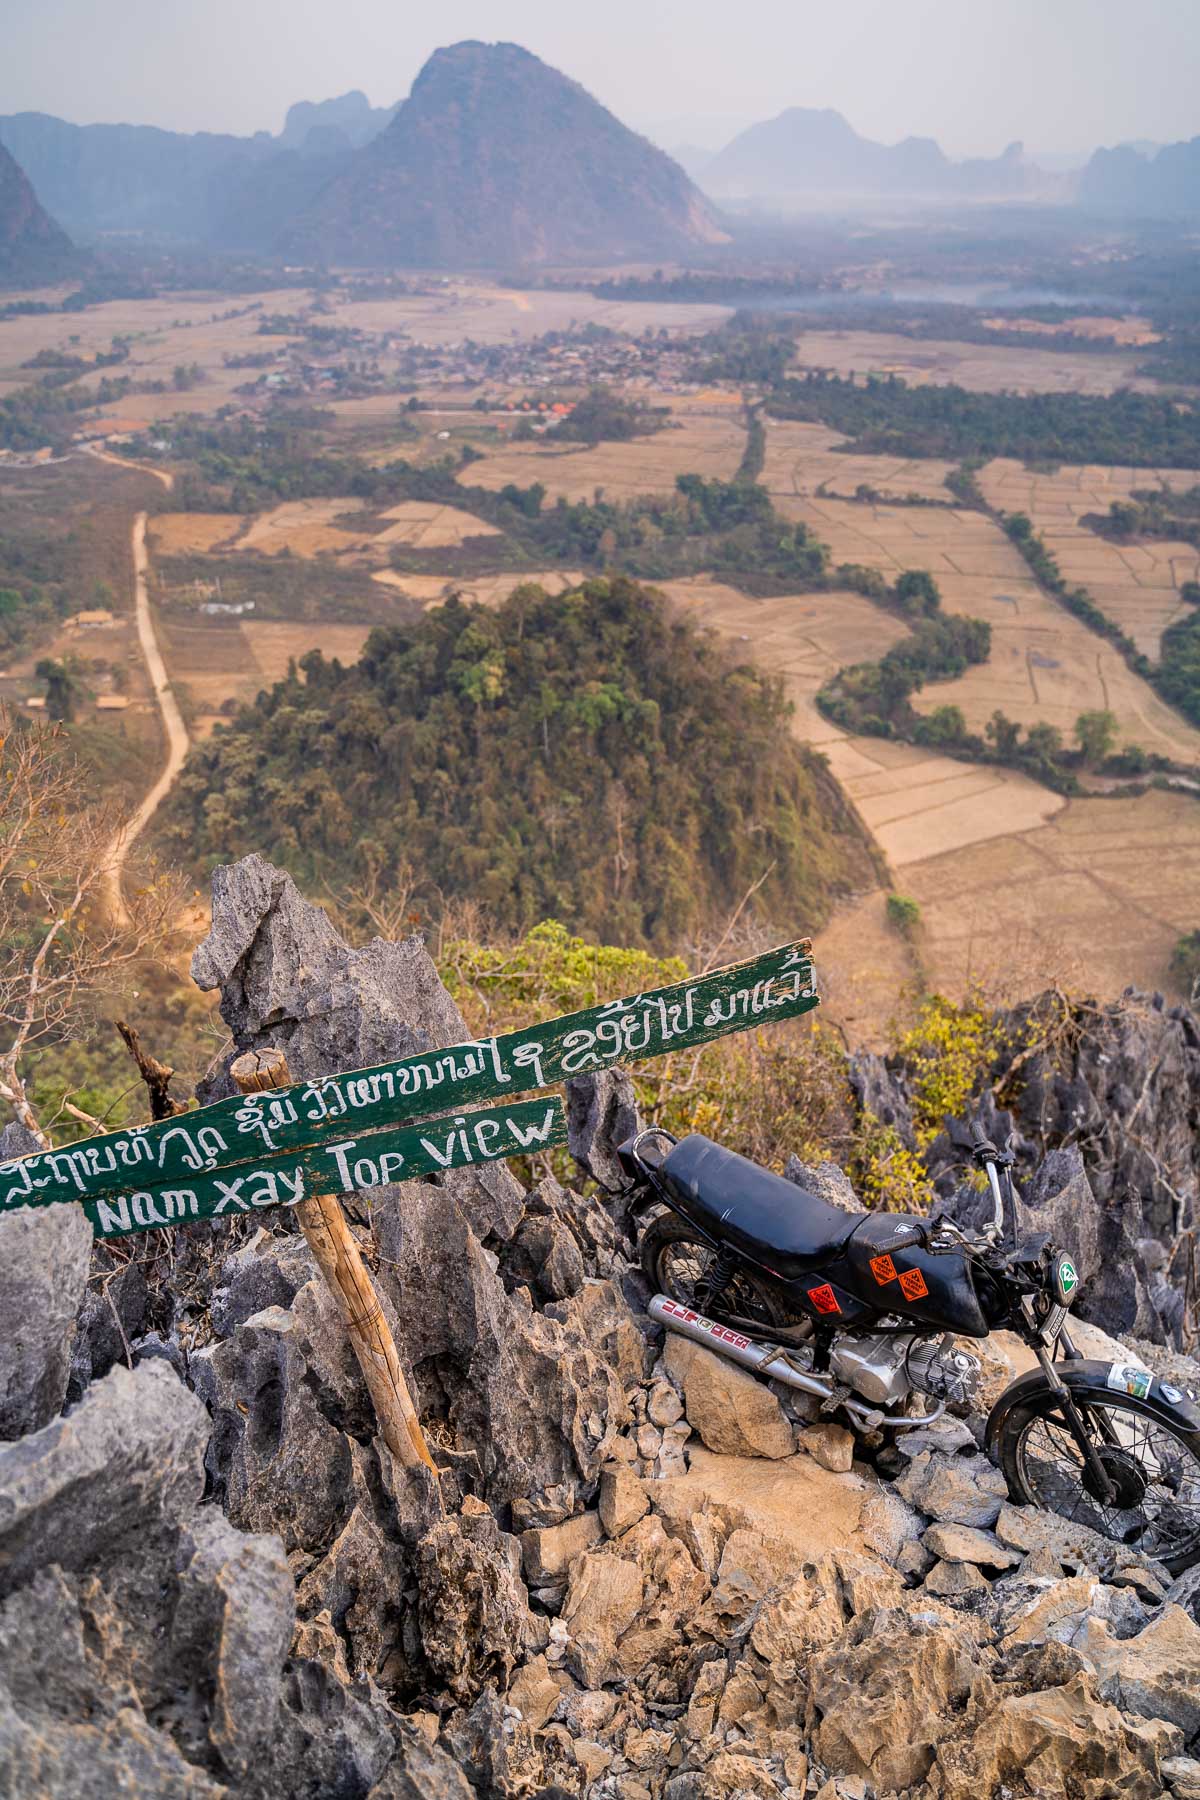 Nam Xay Viewpoint in Vang Vieng, Laos